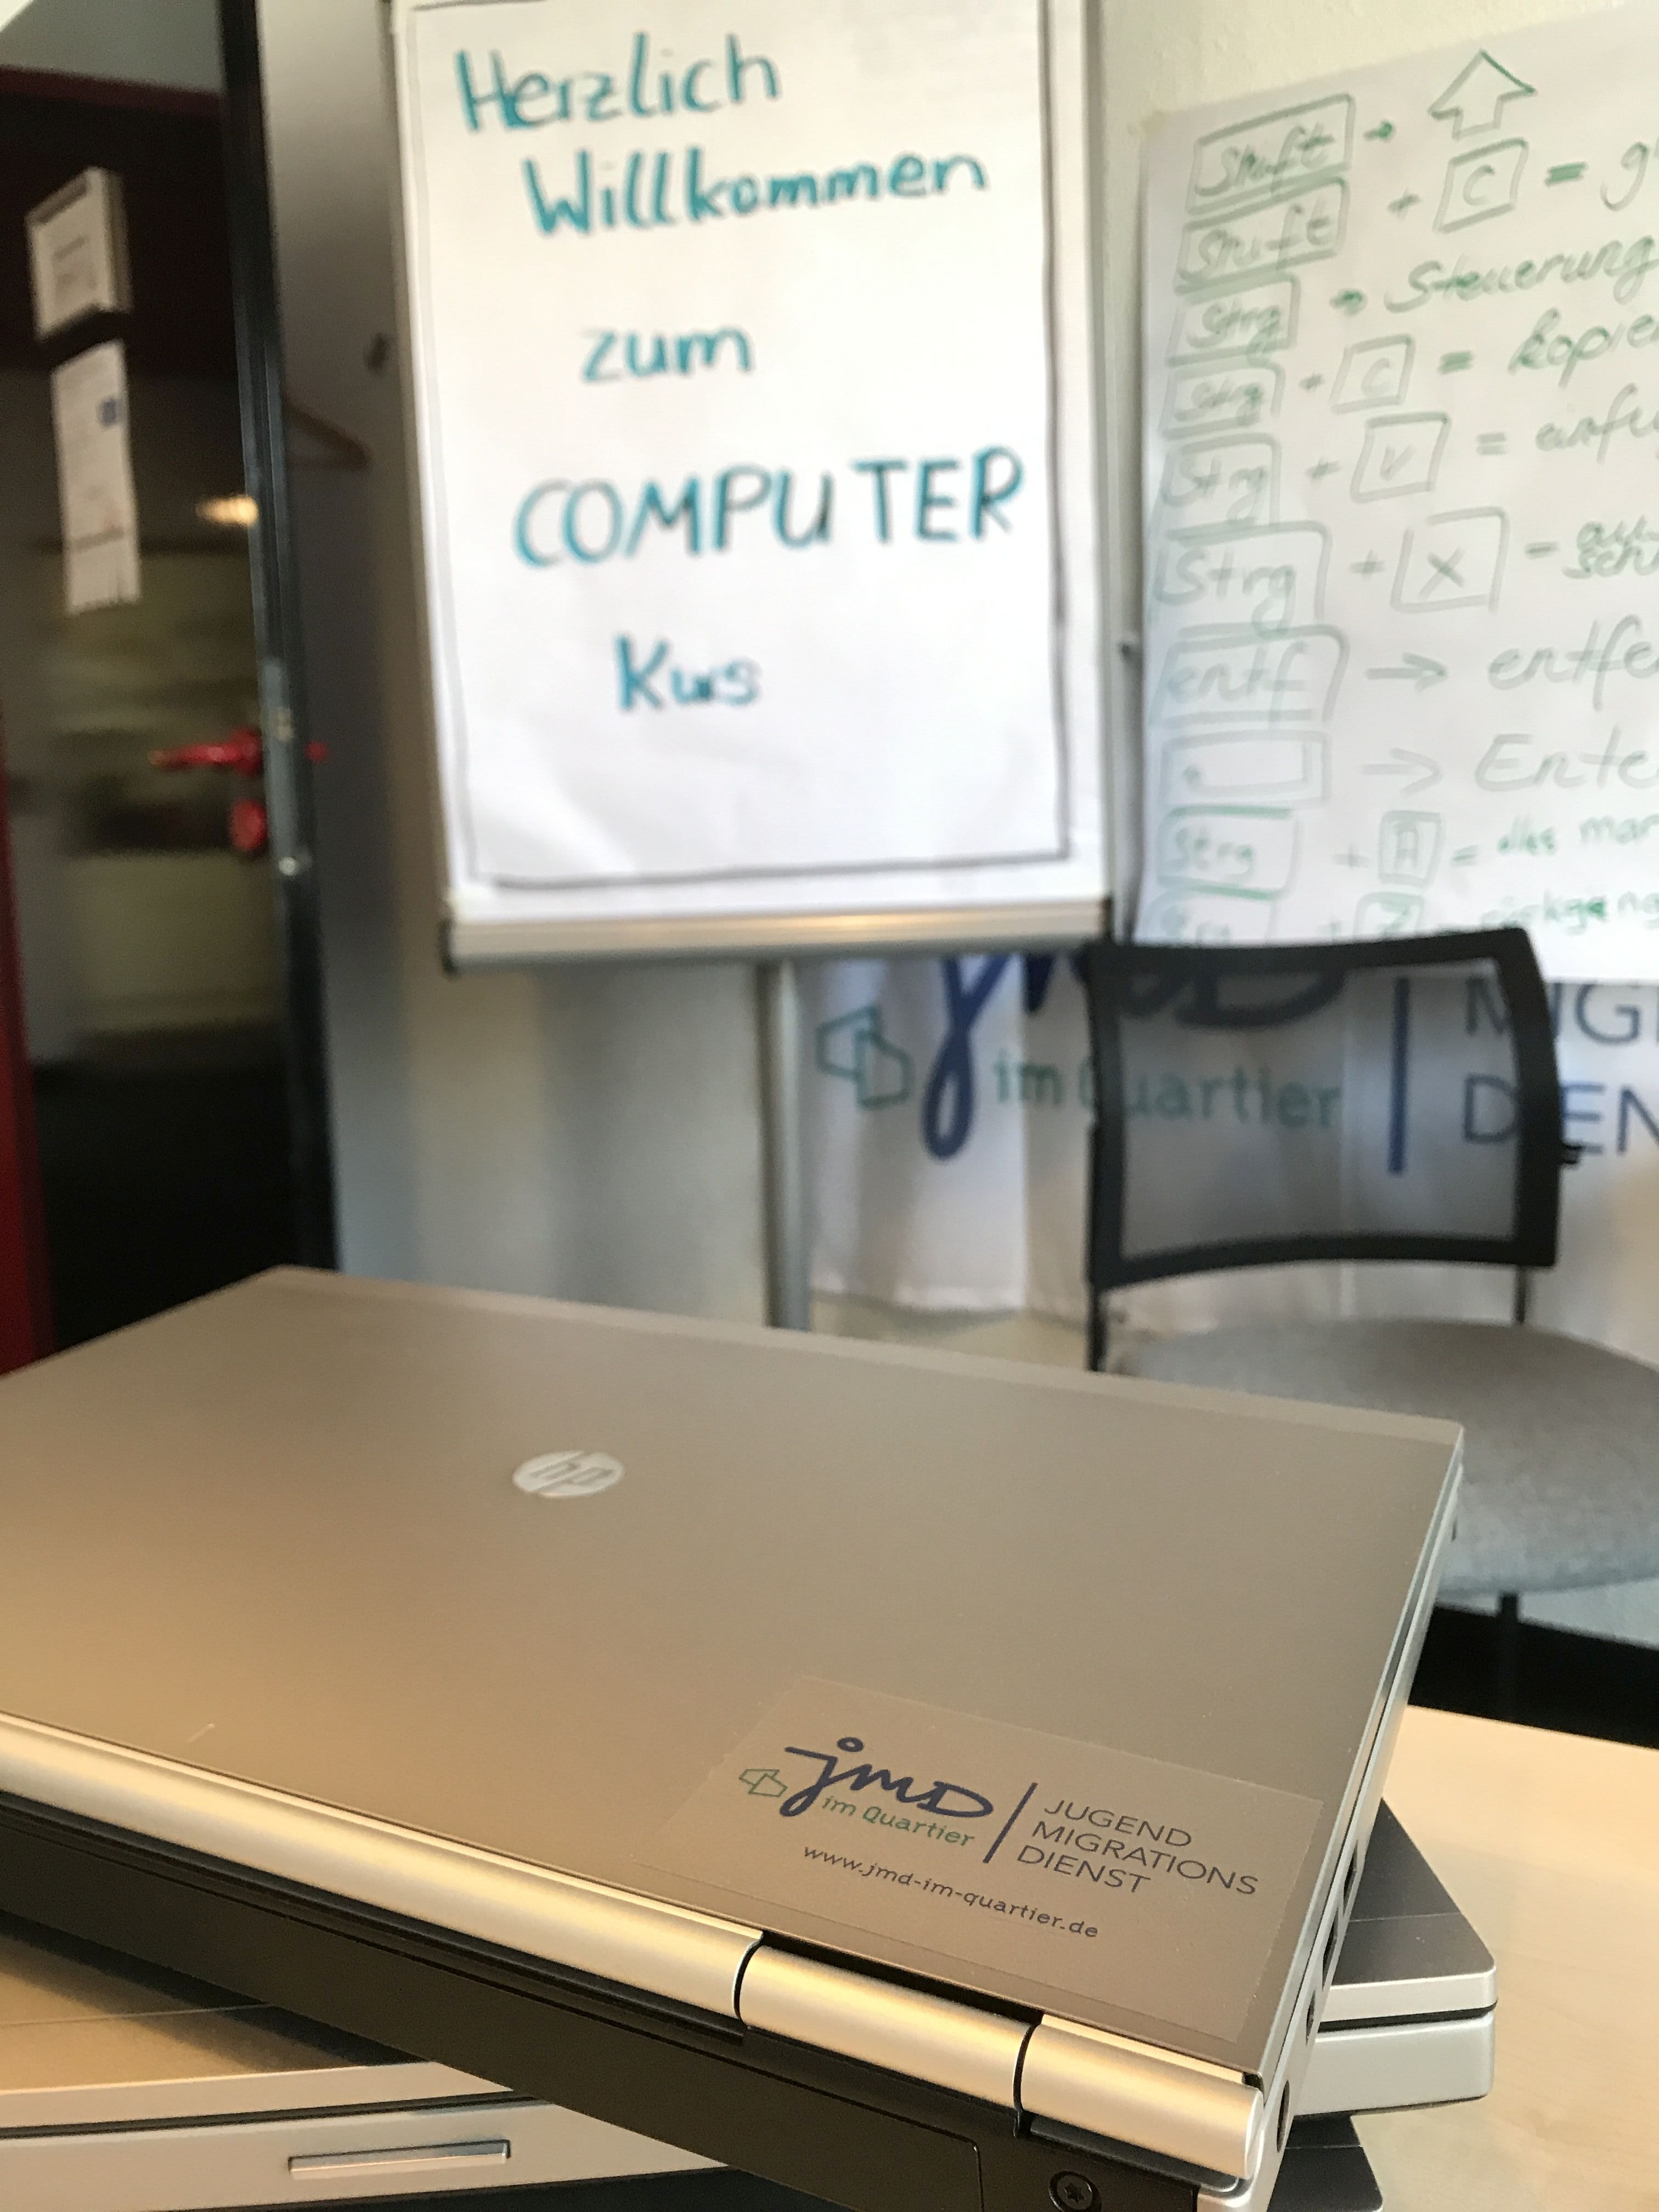 Zwei Laptops liegen übereinander auf einem Tisch. Im Hintergrund steht eine Flipchart aufgestellt mit den Worten: "Herzlich Willkommen zum COMPUTER Kurs".